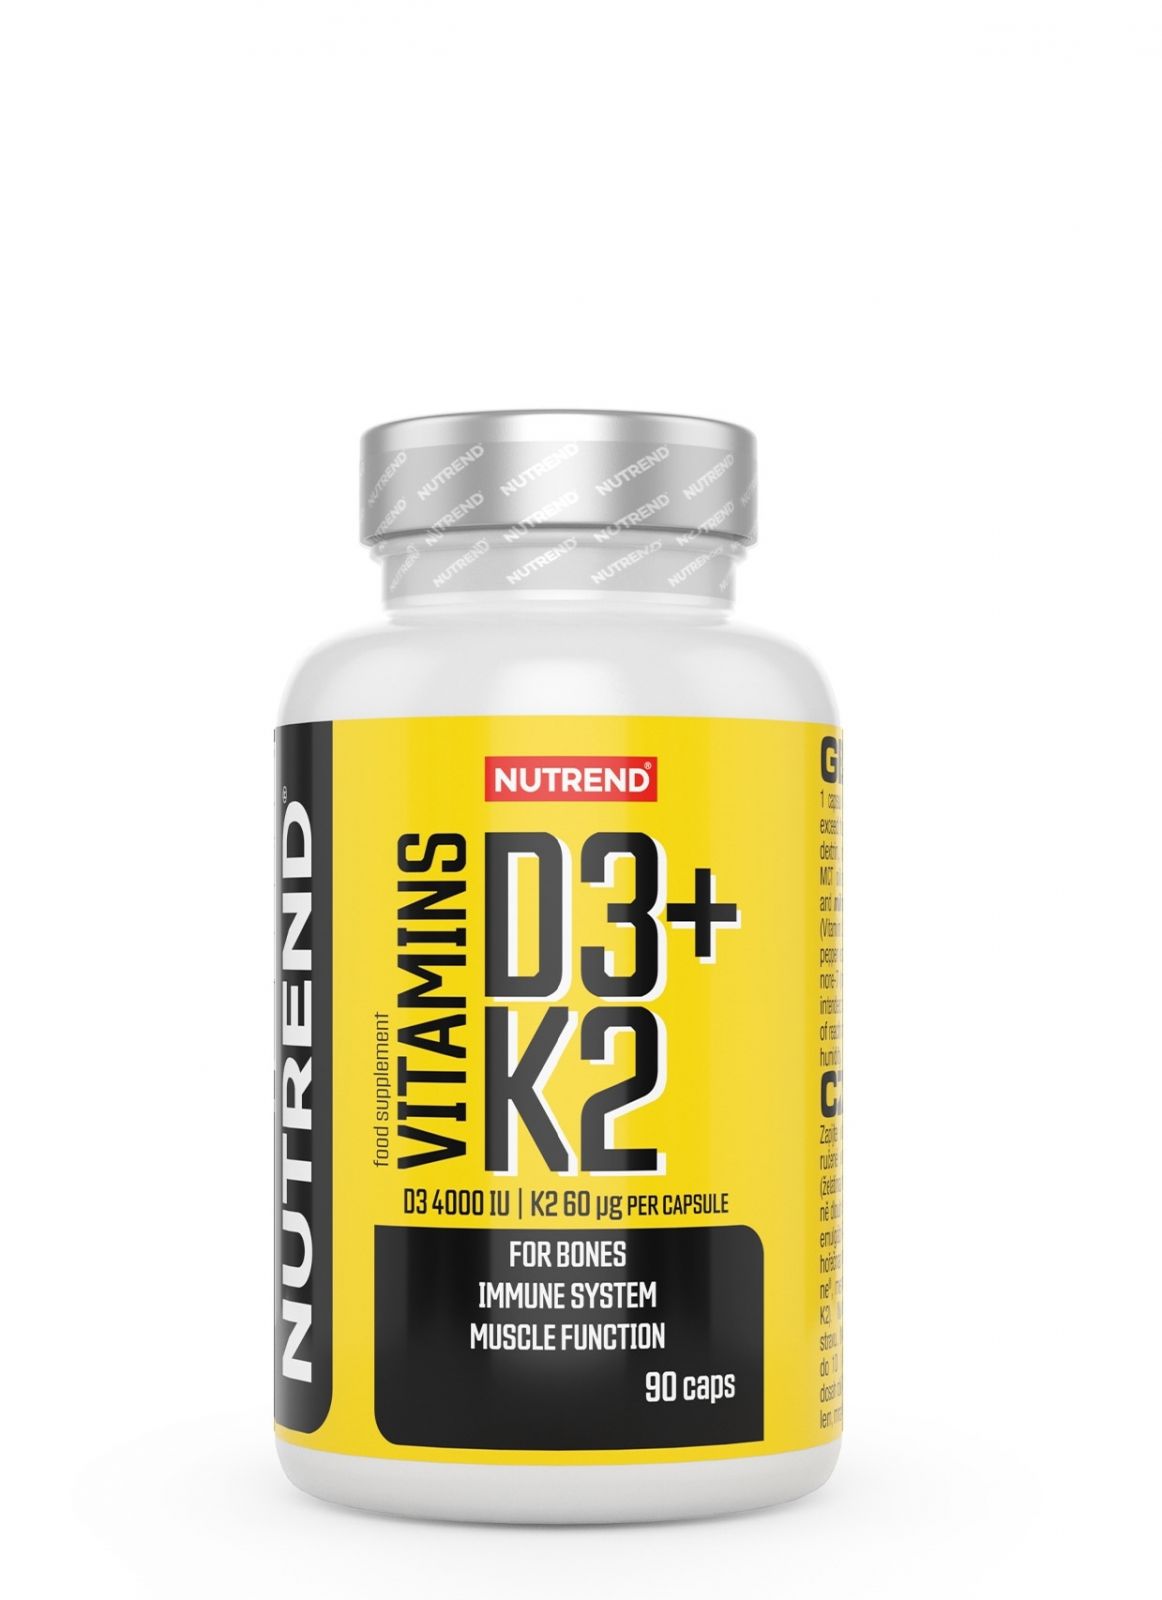 VITAMINS D3+K2, obsahuje 90 kapslí NUTREND